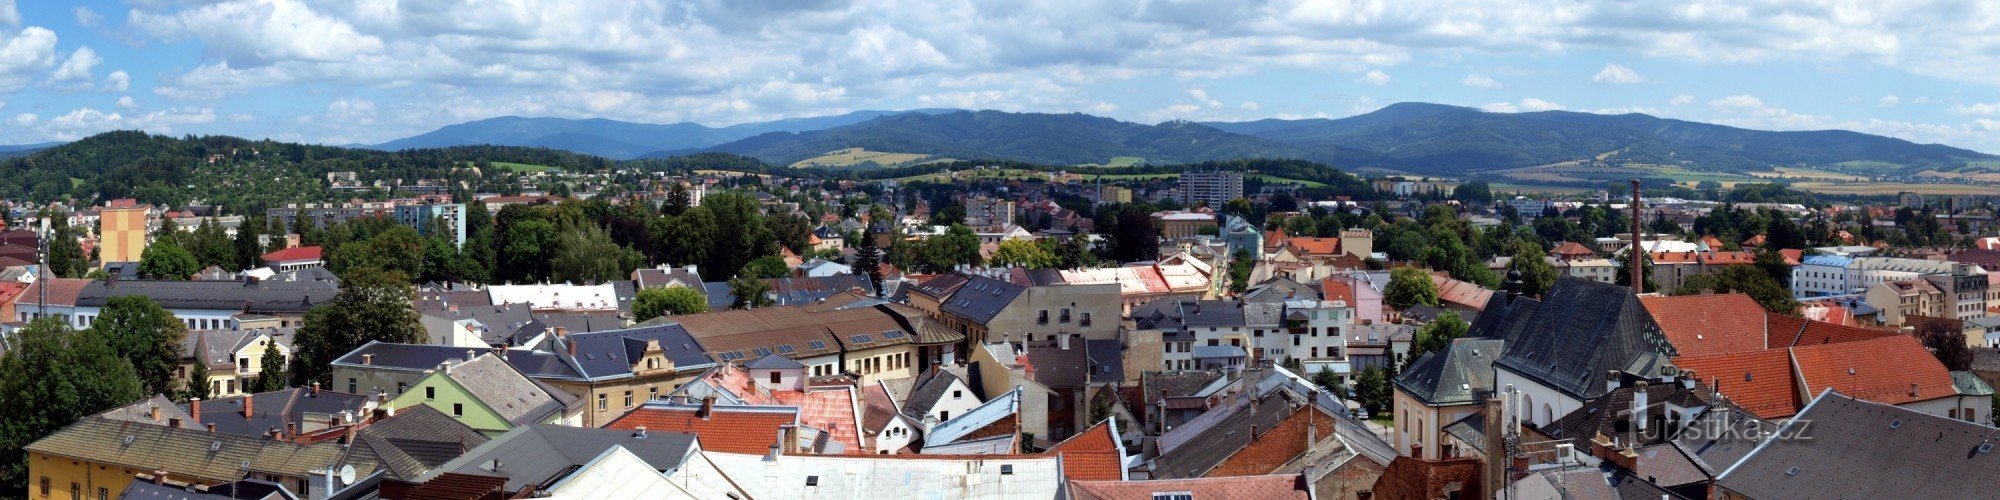 Udsigt over byen og Jeseníky-bjergene fra rådhustårnet